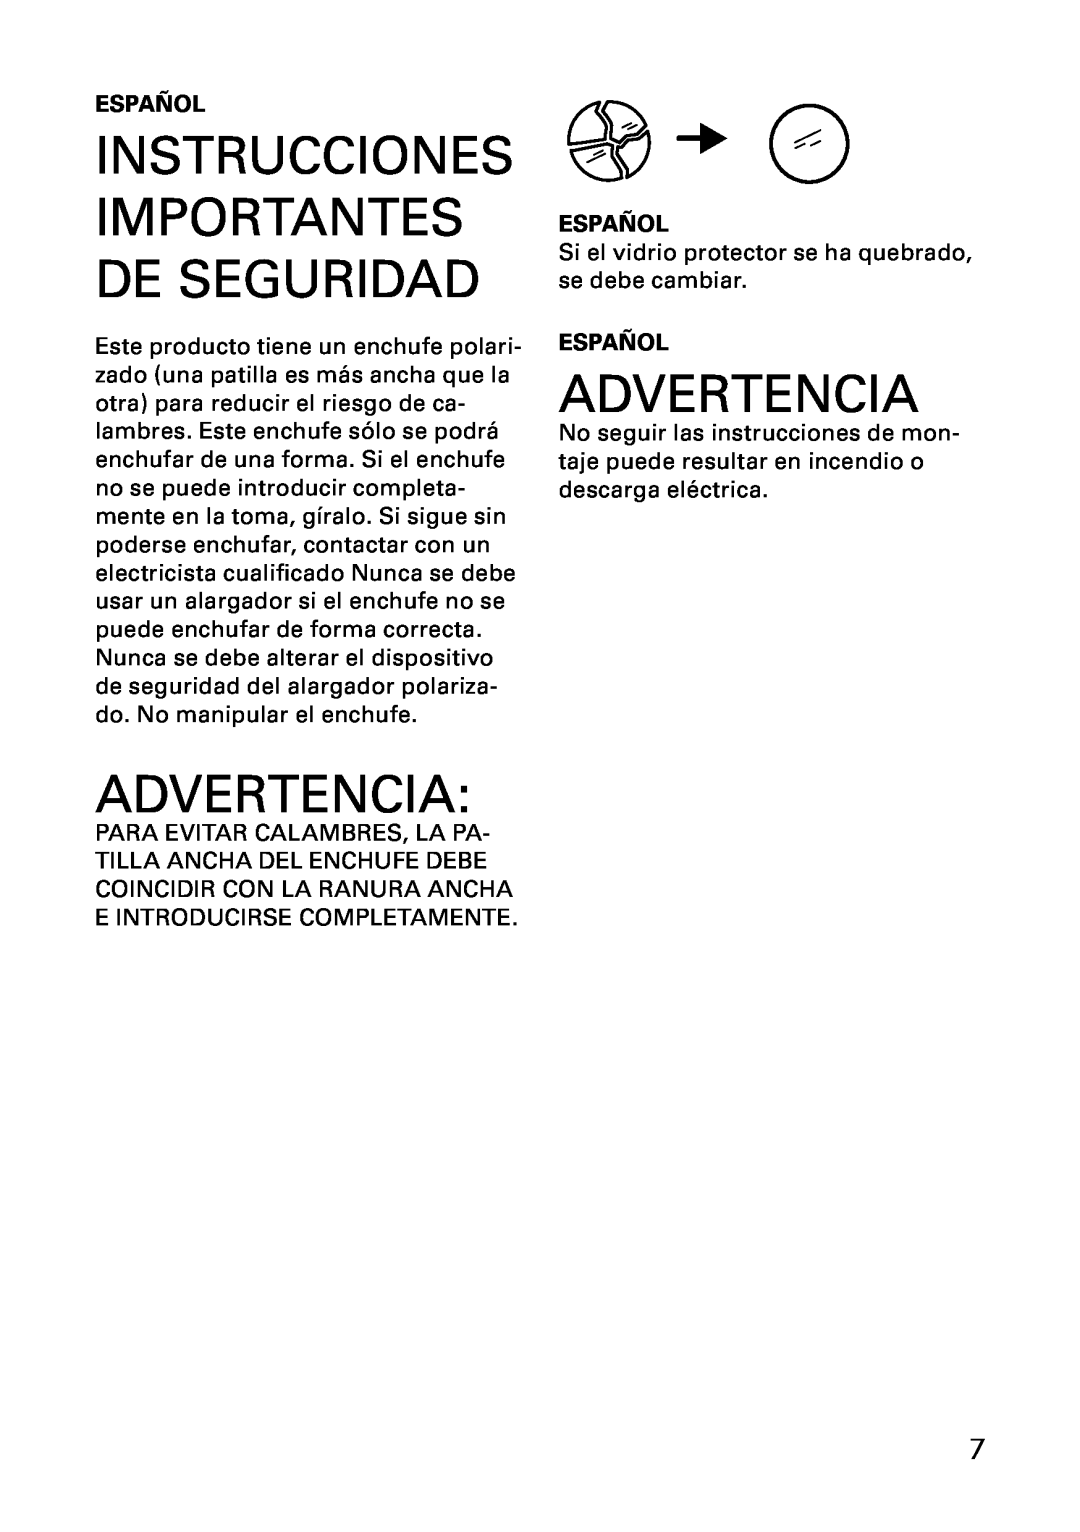 IKEA AA-297407-3, AA-297408-3 manual Advertencia, Instrucciones Importantes De Seguridad, Español 